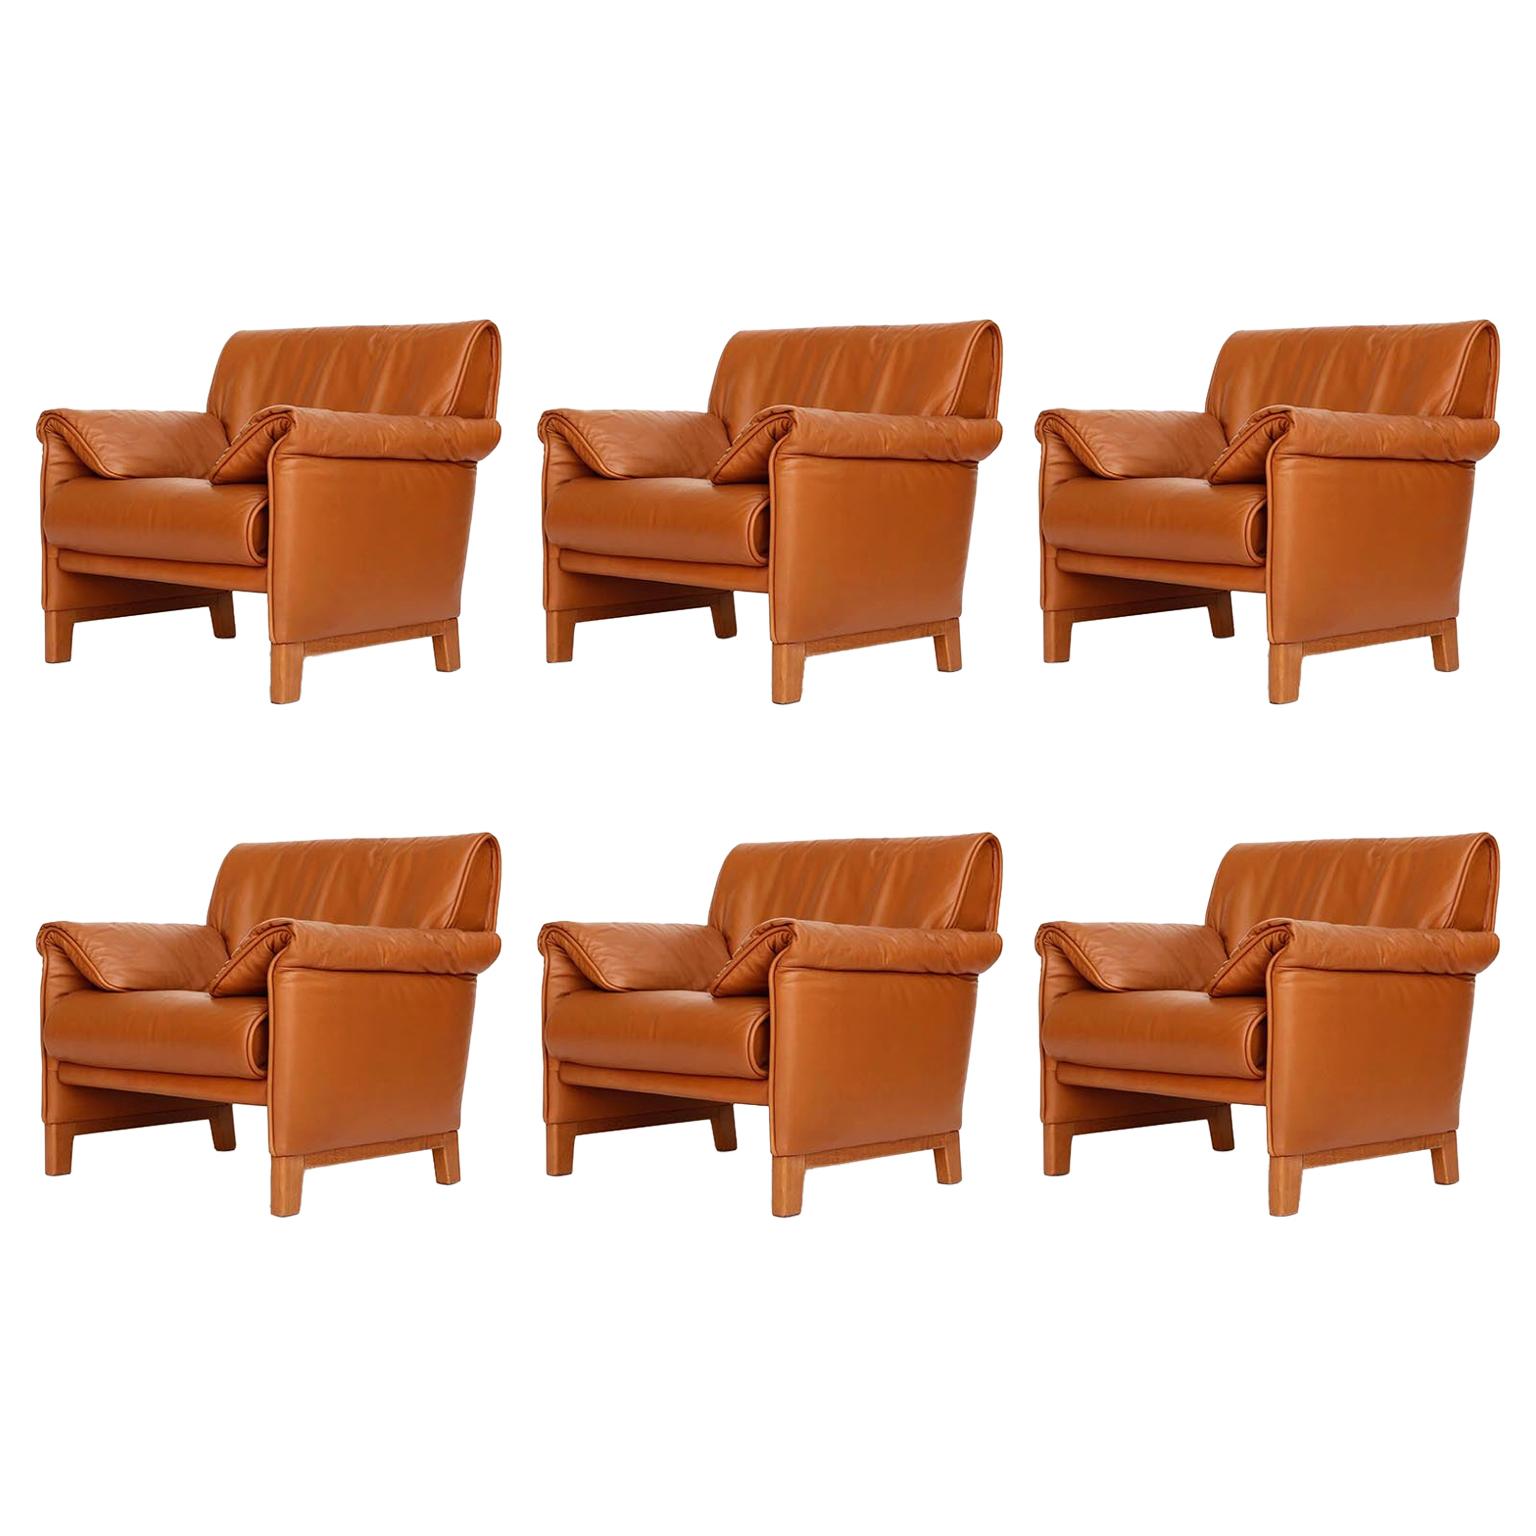 Quatre fauteuils de la collection DS-14 de De Sede, en cuir et teck cognac, 1989